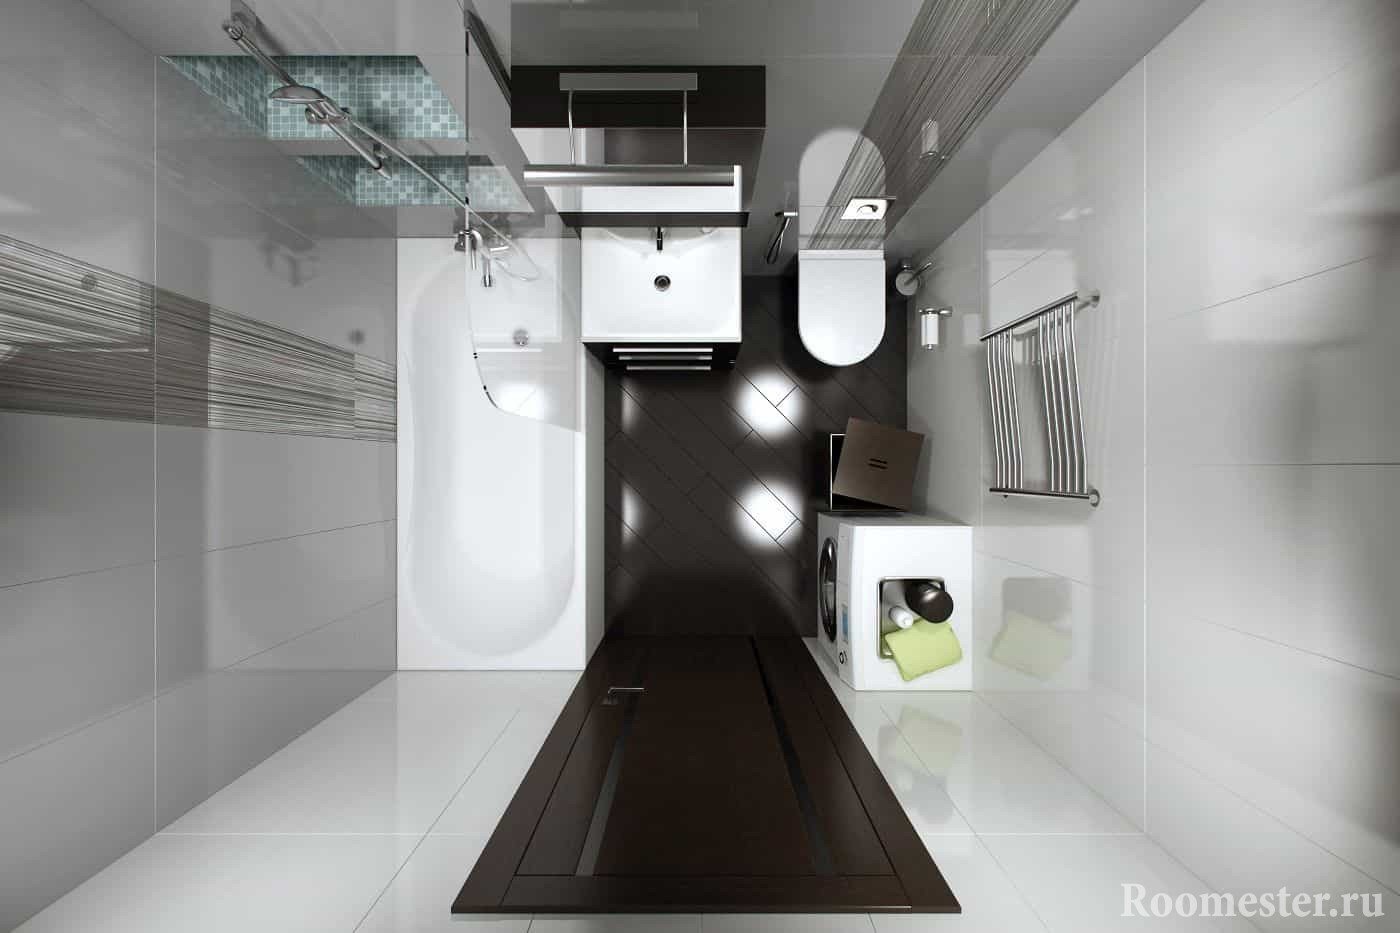 Расположение сантехники и стиральной машины в ванной в панельном доме